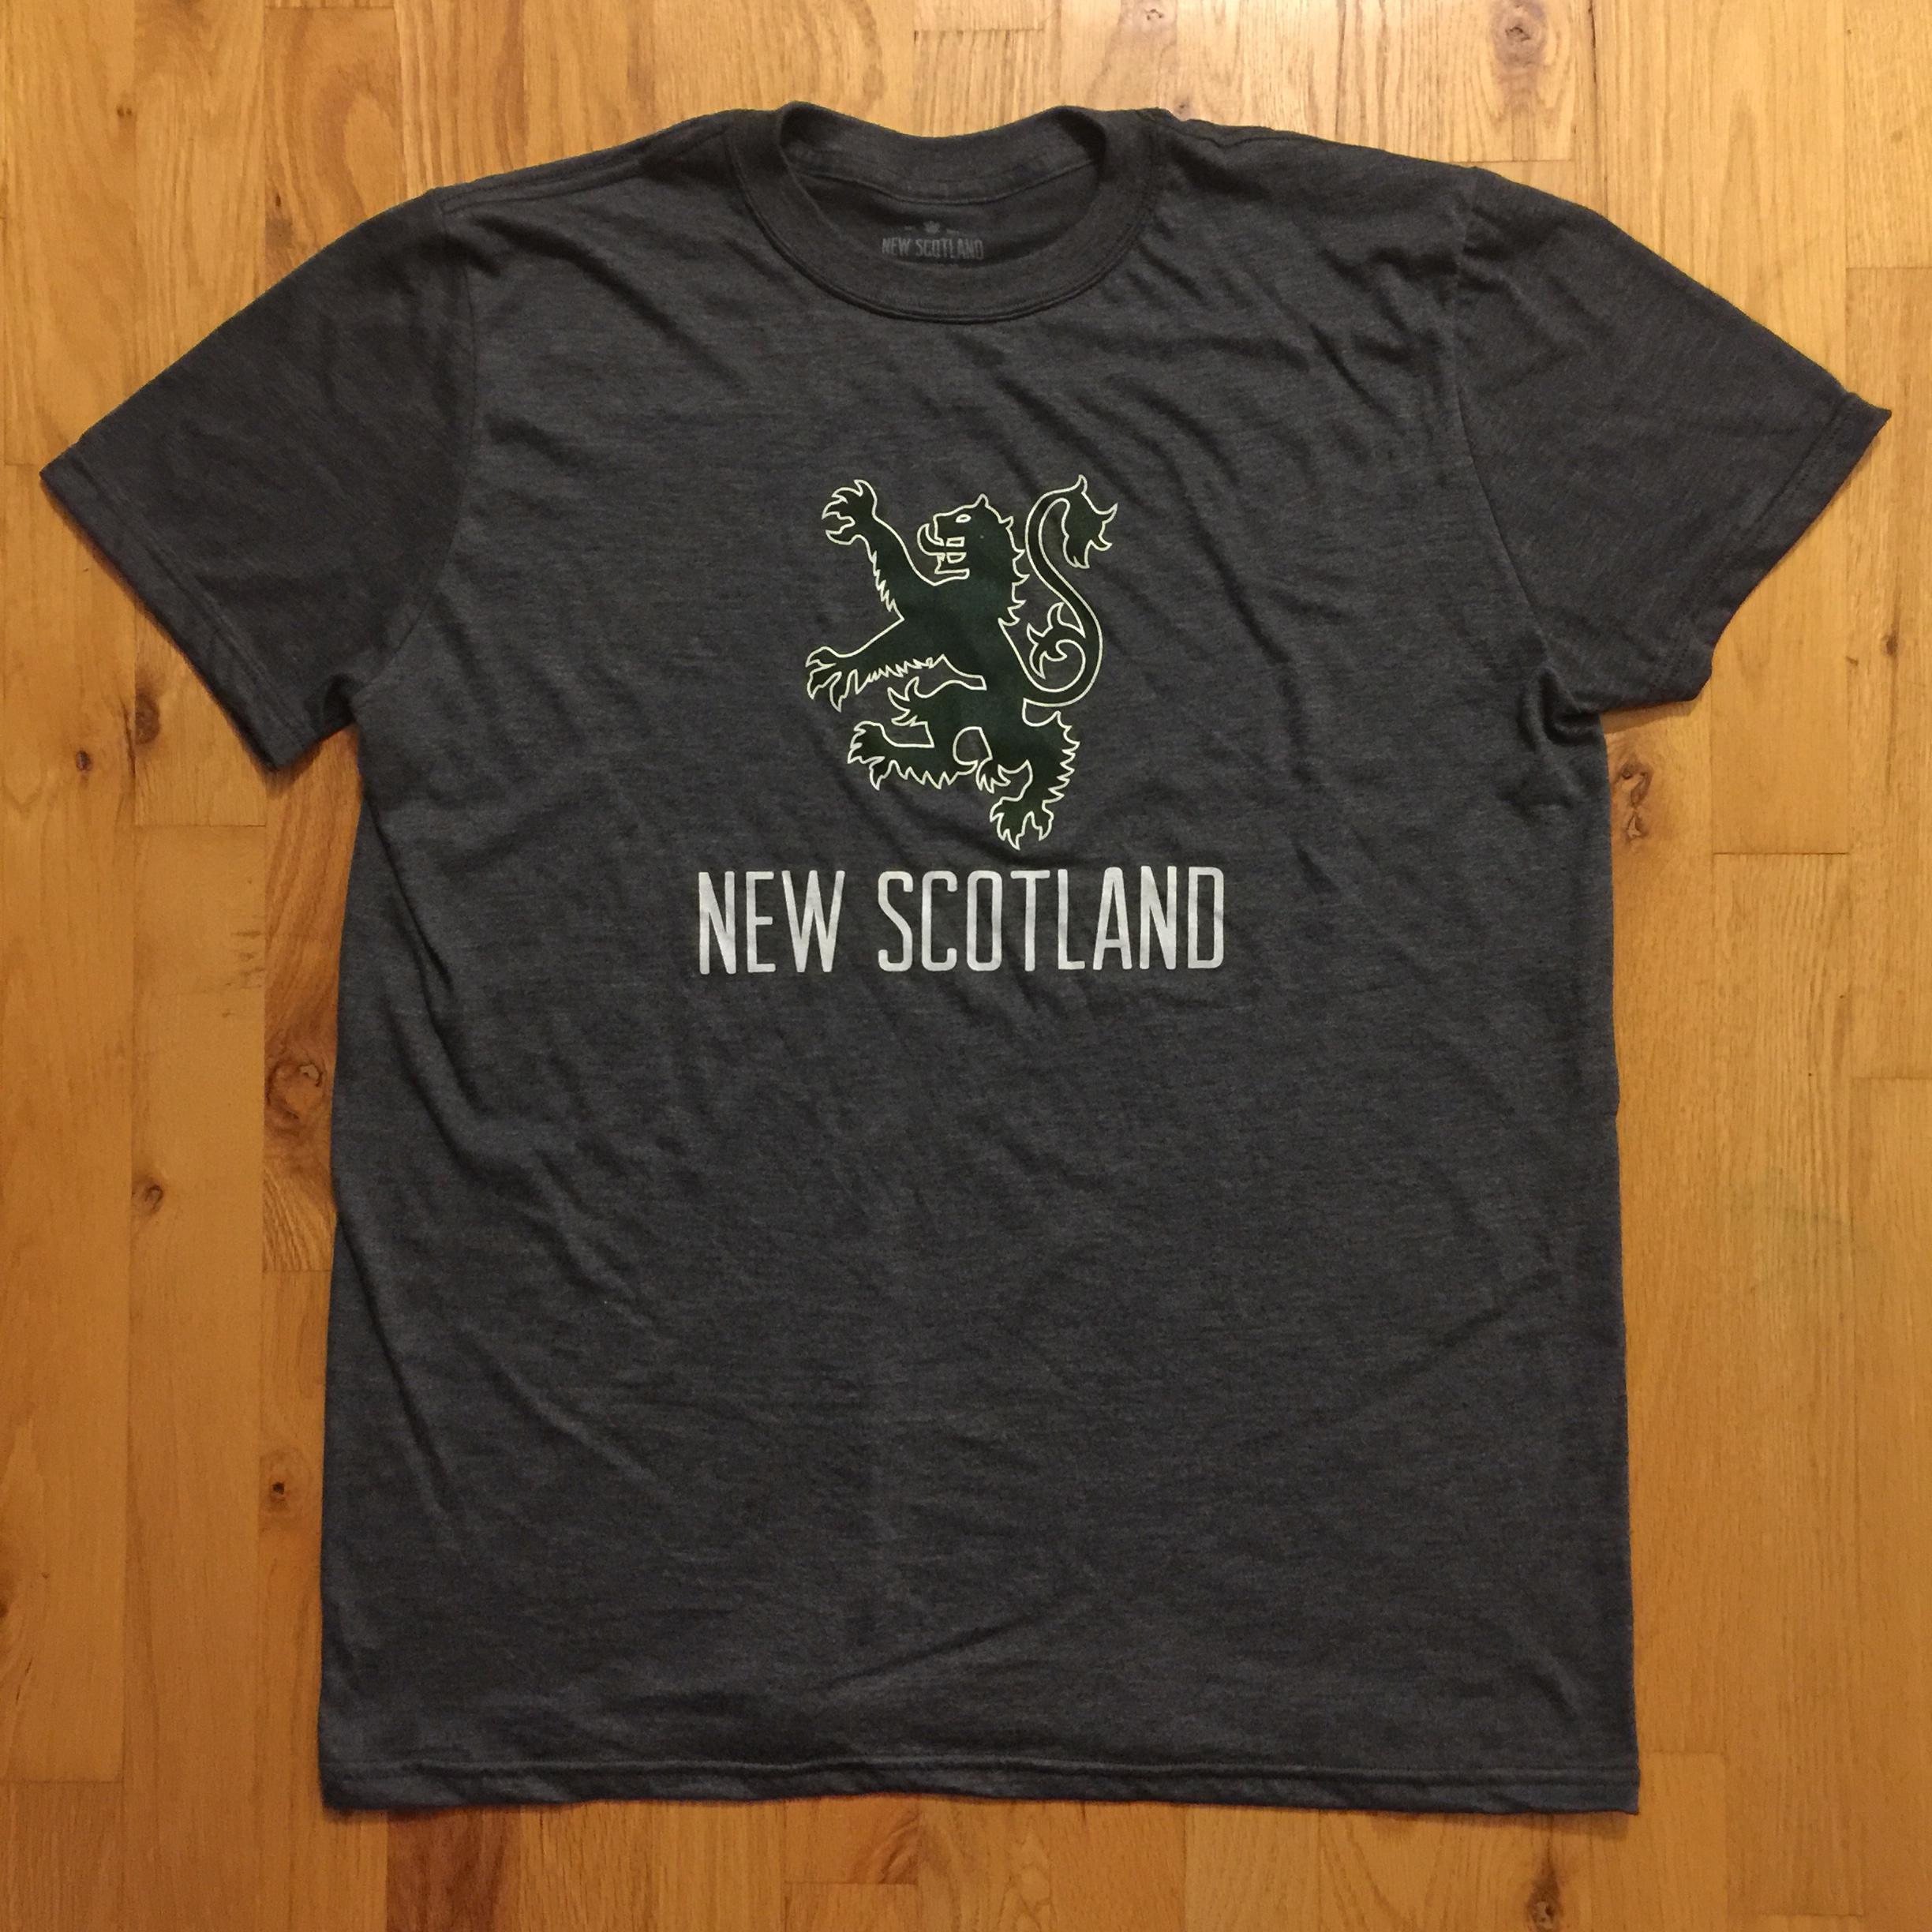 New Scotland Clothing Co. | 102 Portland St, Dartmouth, NS B2Y 3H8 | +1 902-405-0109